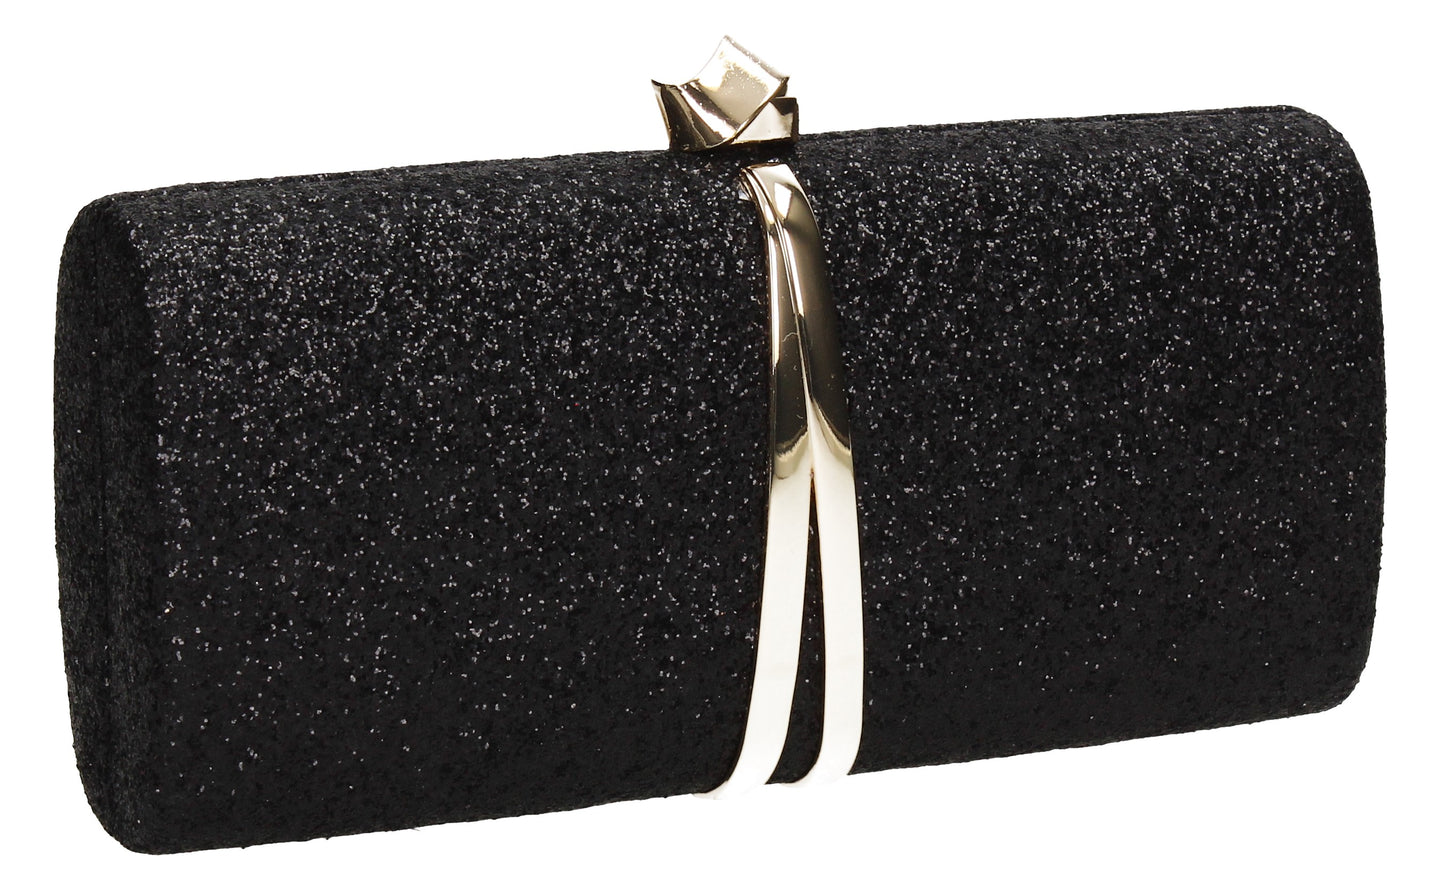 SWANKYSWANS Daisy Clutch Bag Black Cute Cheap Clutch Bag For Weddings School and Work